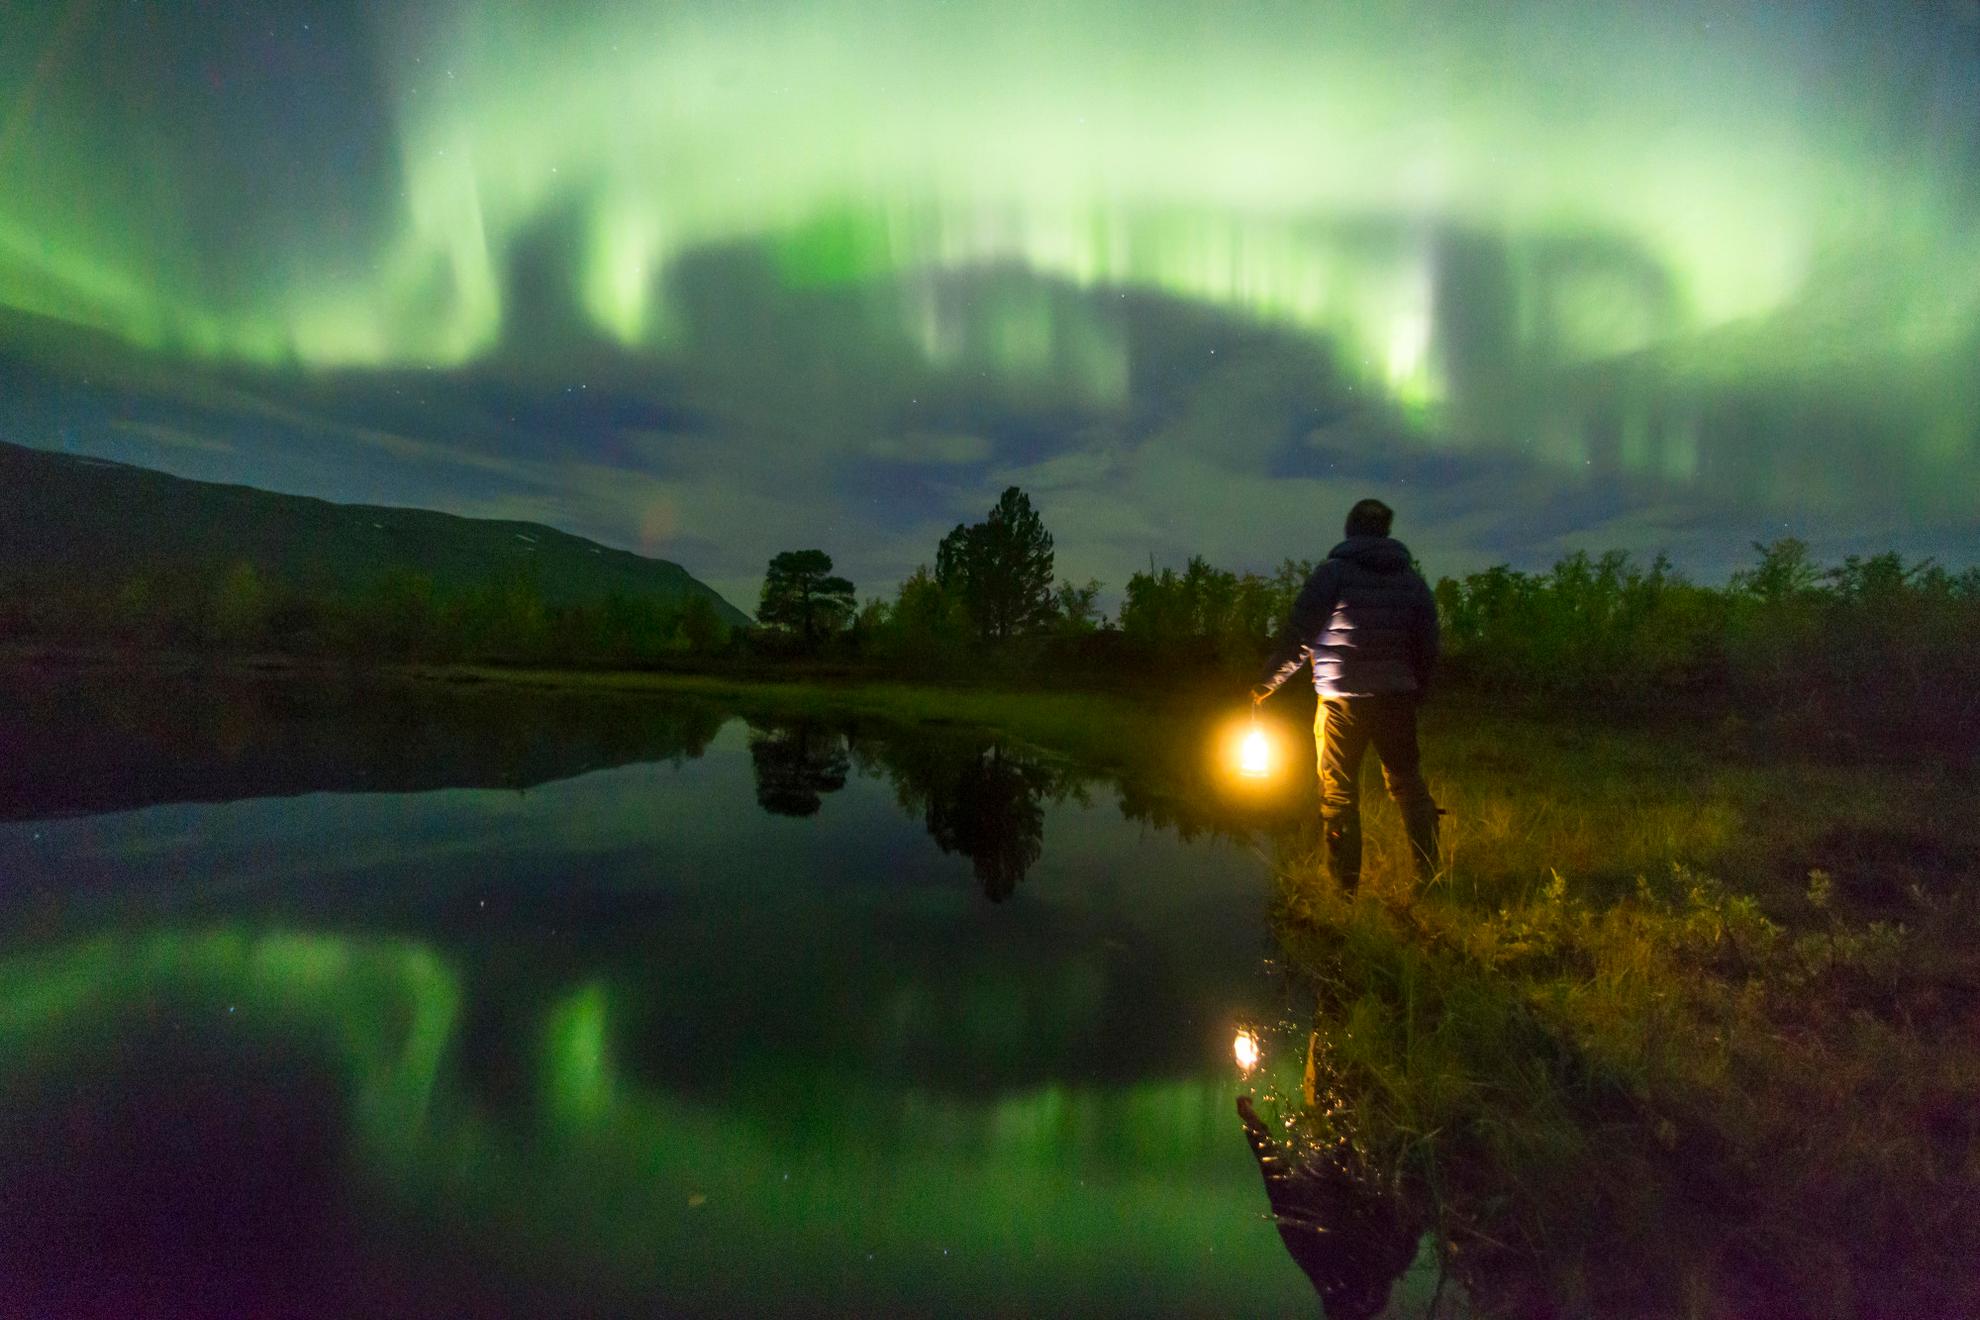 Une personne tenant une lampe regarde les aurores boréales vertes dans le ciel. Les aurores boréales se reflètent dans le lac à côté de la personne.